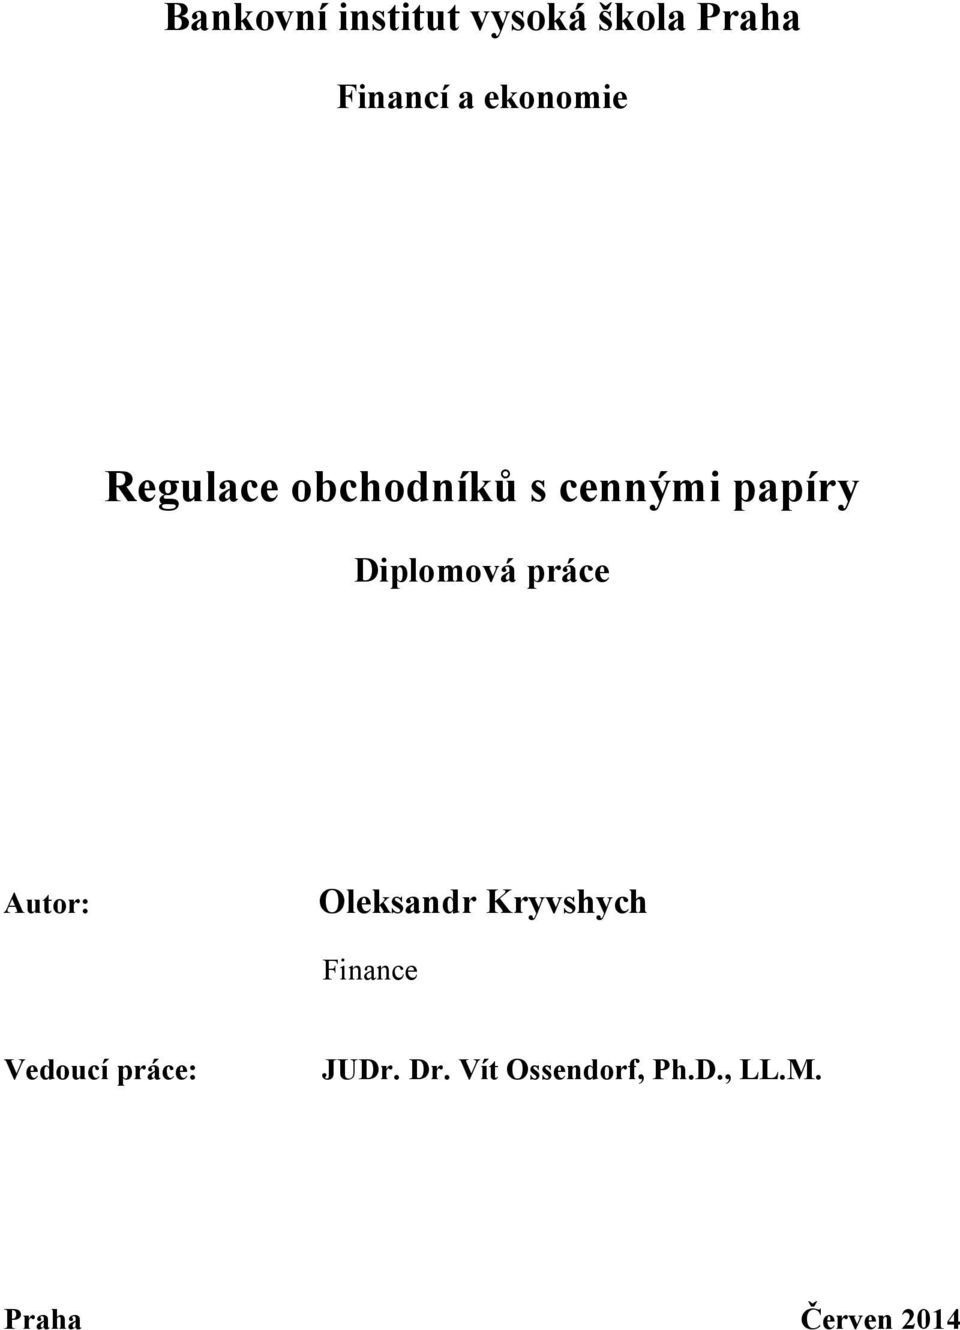 Diplomová práce Autor: Oleksandr Kryvshych Finance